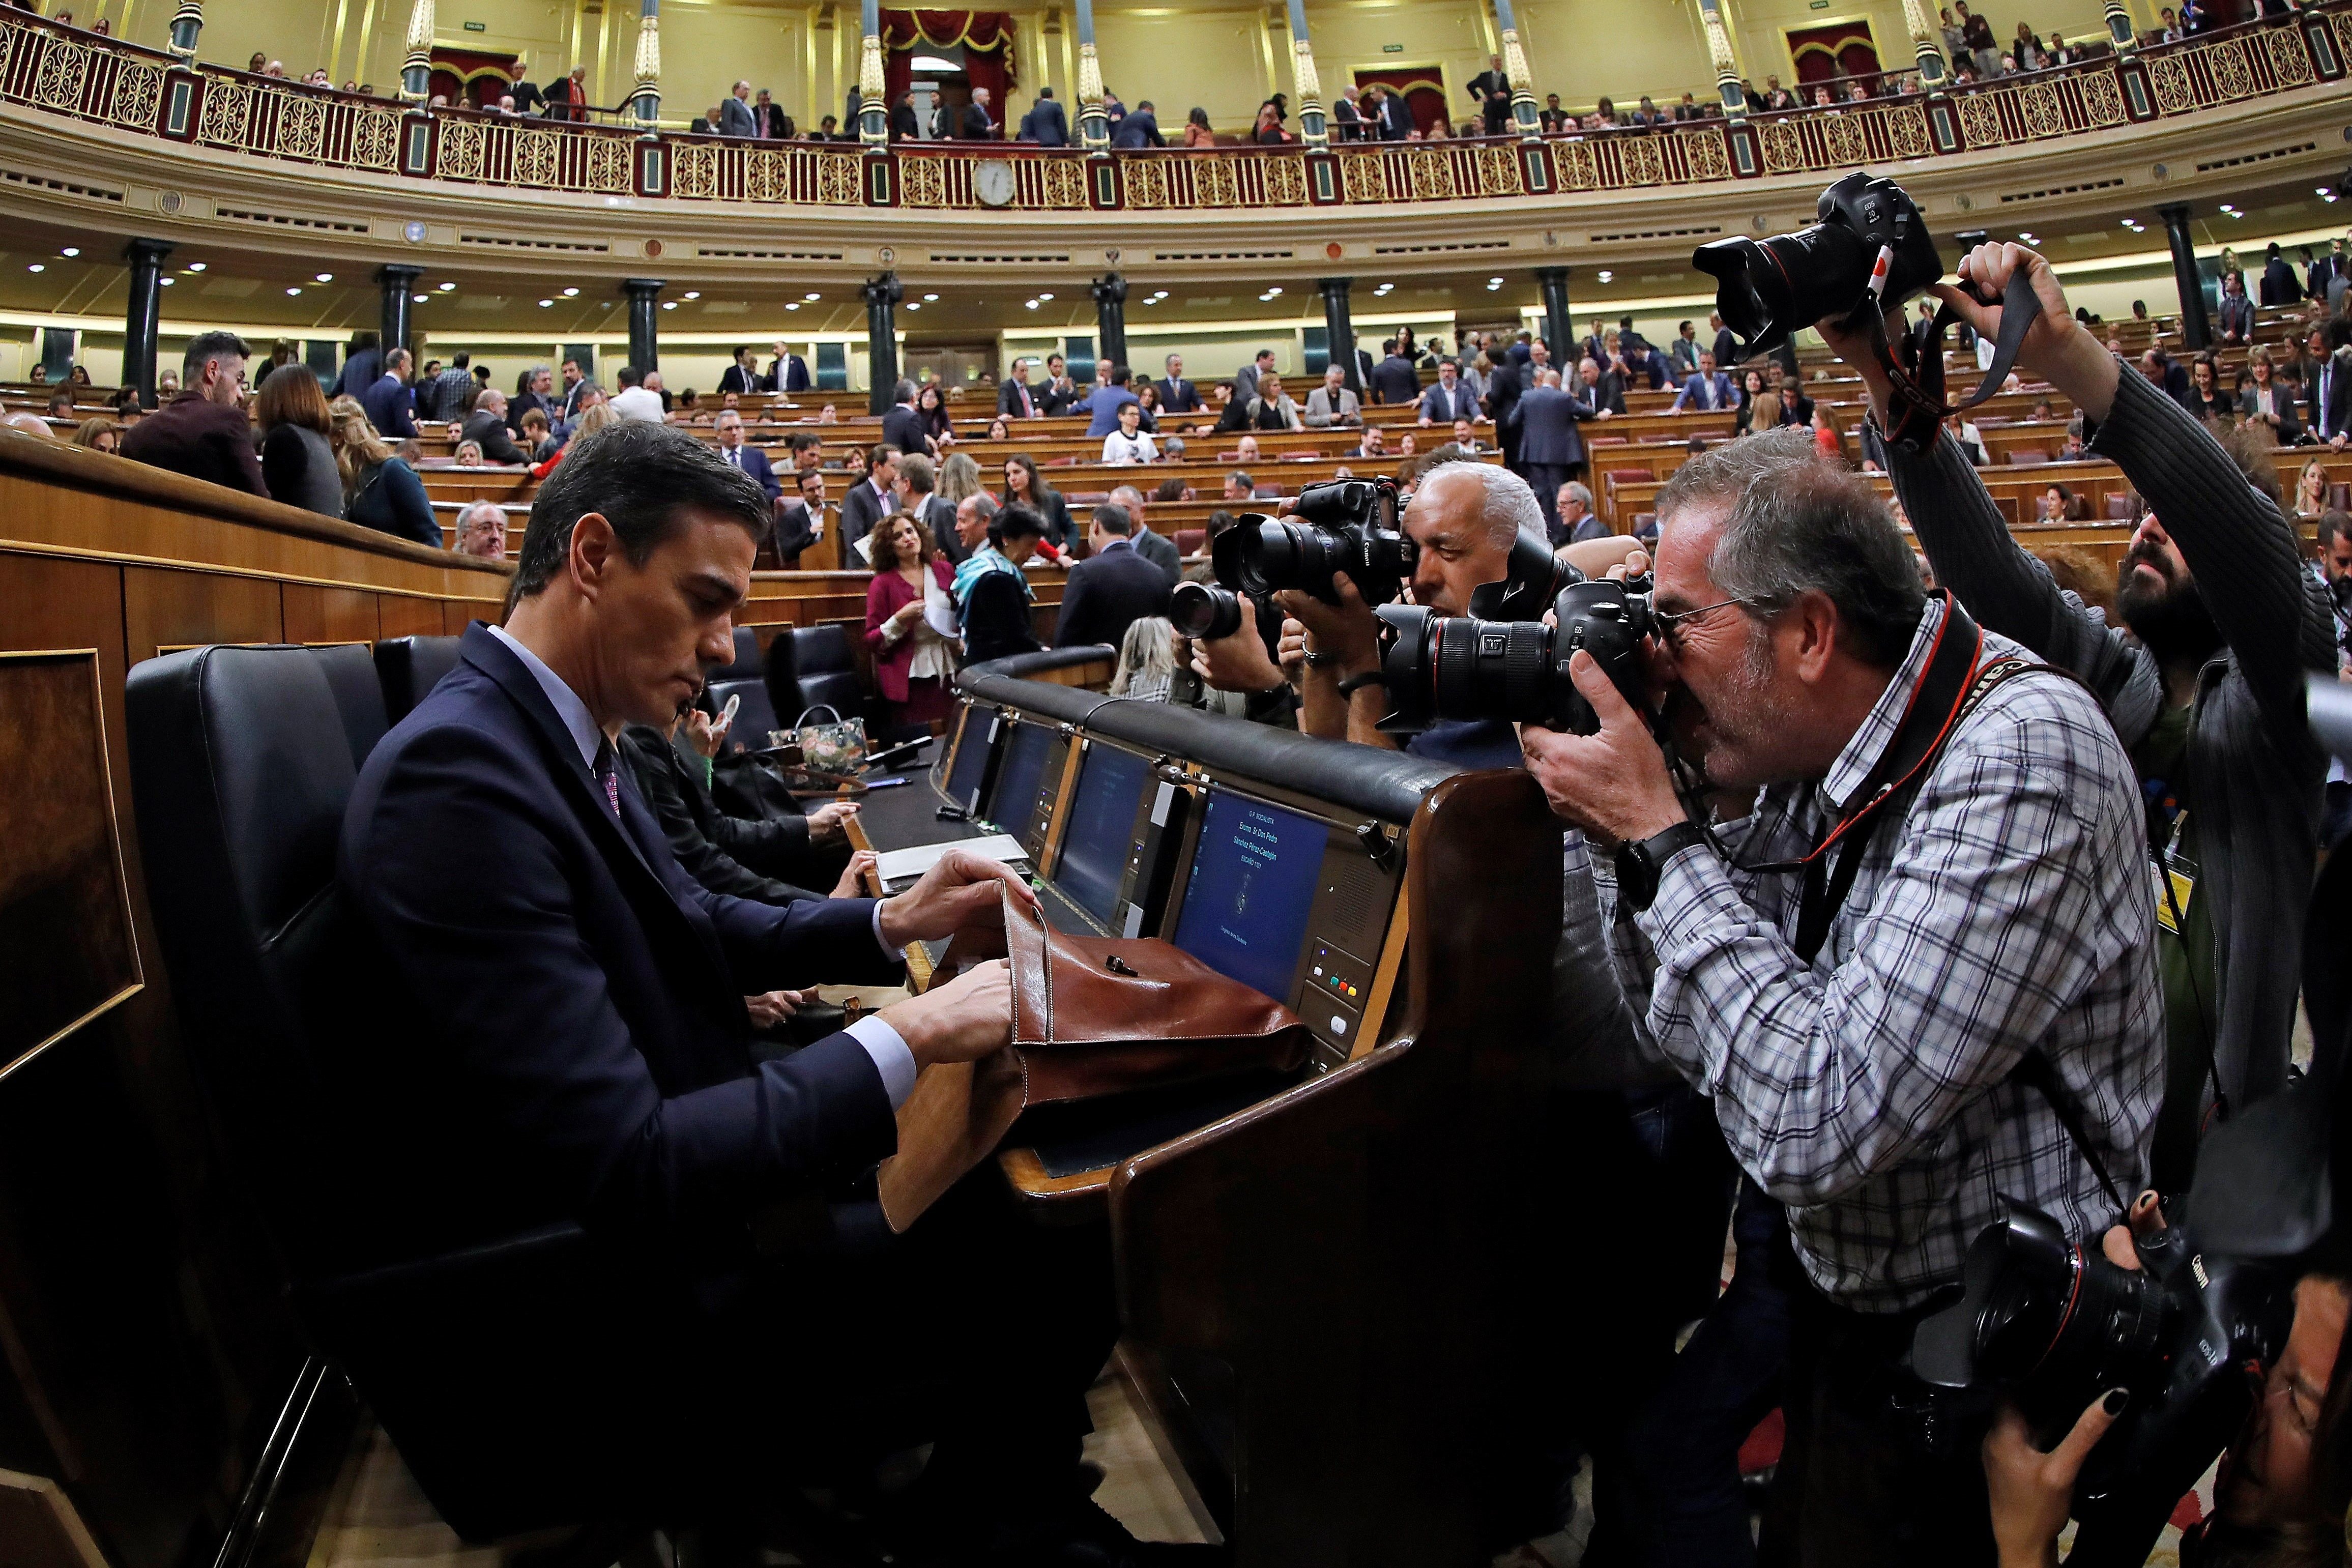 Les costures del sistema polític espanyol espeteguen al Congrés